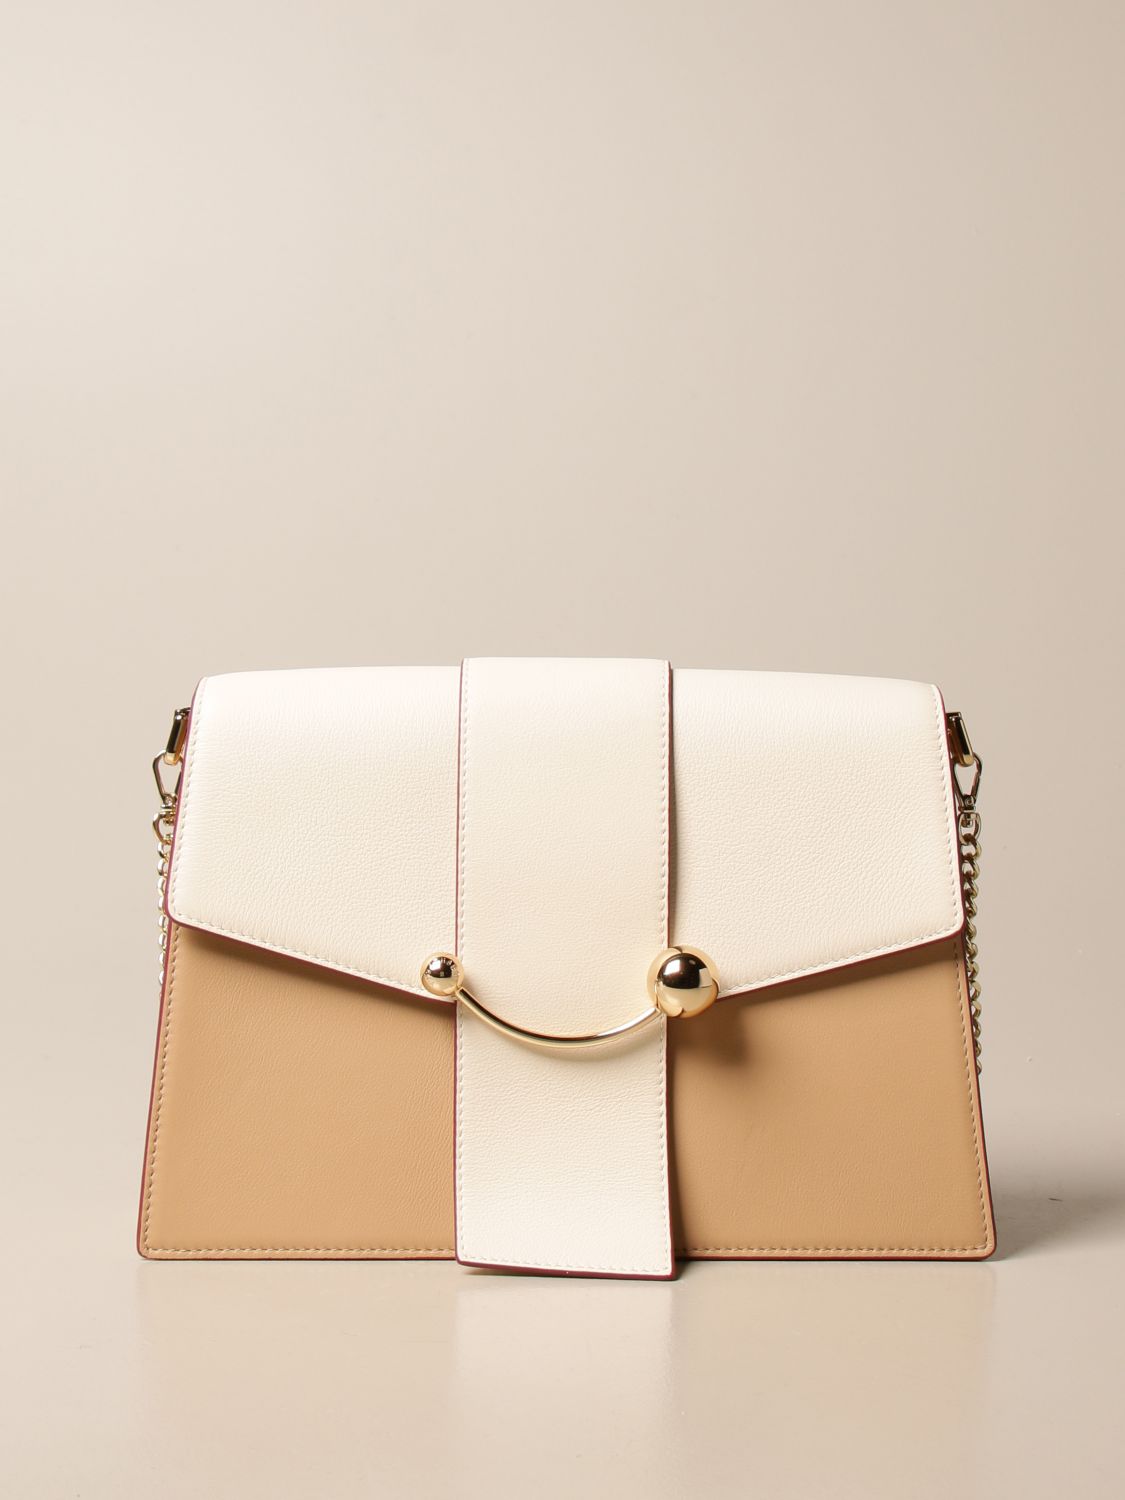 Strathberry - Crescent Shoulder - Leather Shoulder Bag - Brown